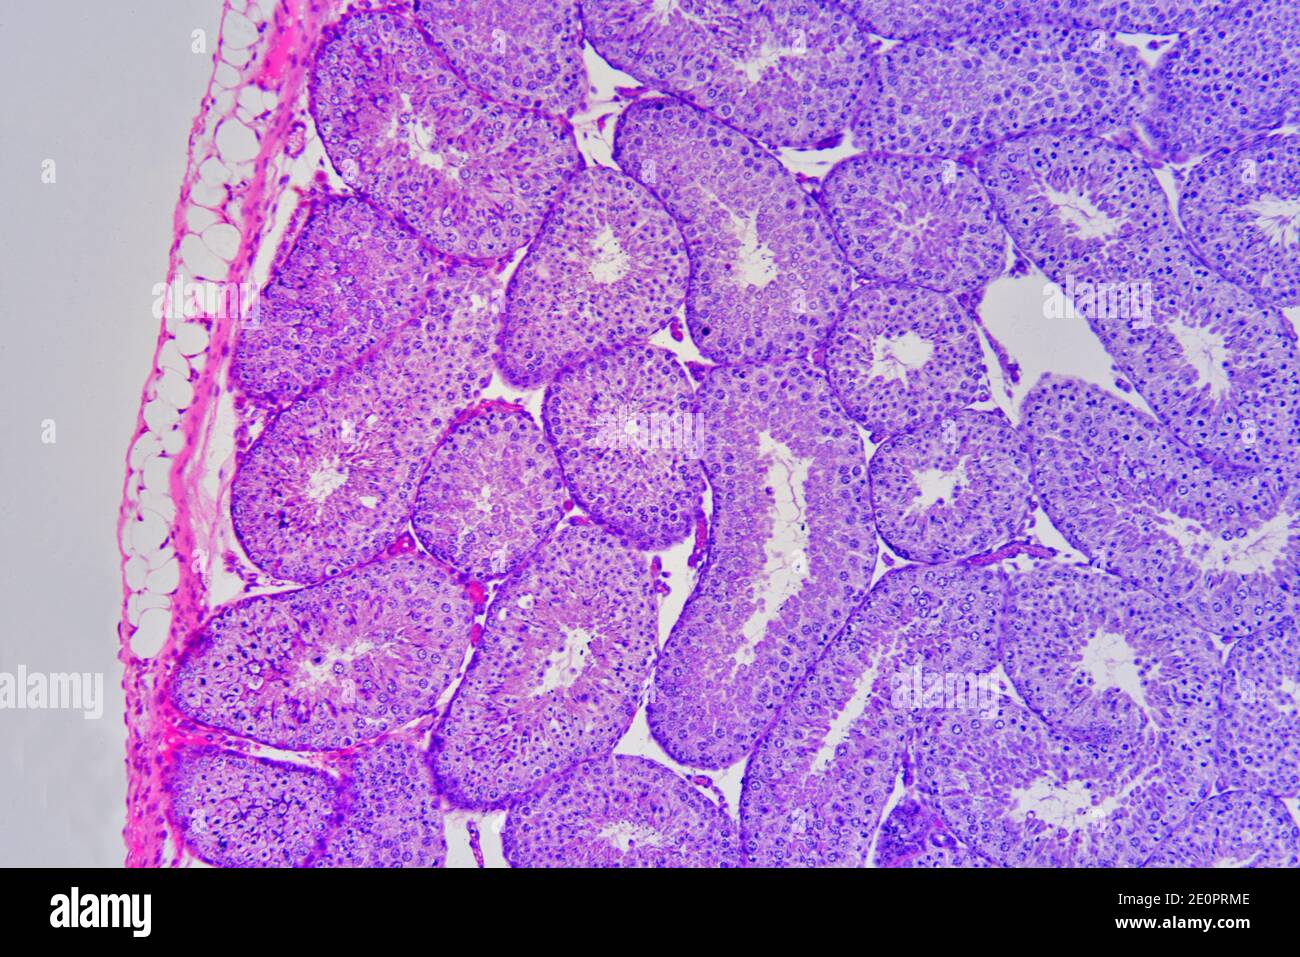 Kaninchenhoden von links nach rechts: Parietalschicht und Samenbläschenlobulus mit Spermien. Photomikrograph X75 mit einer Breite von 10 cm. Stockfoto